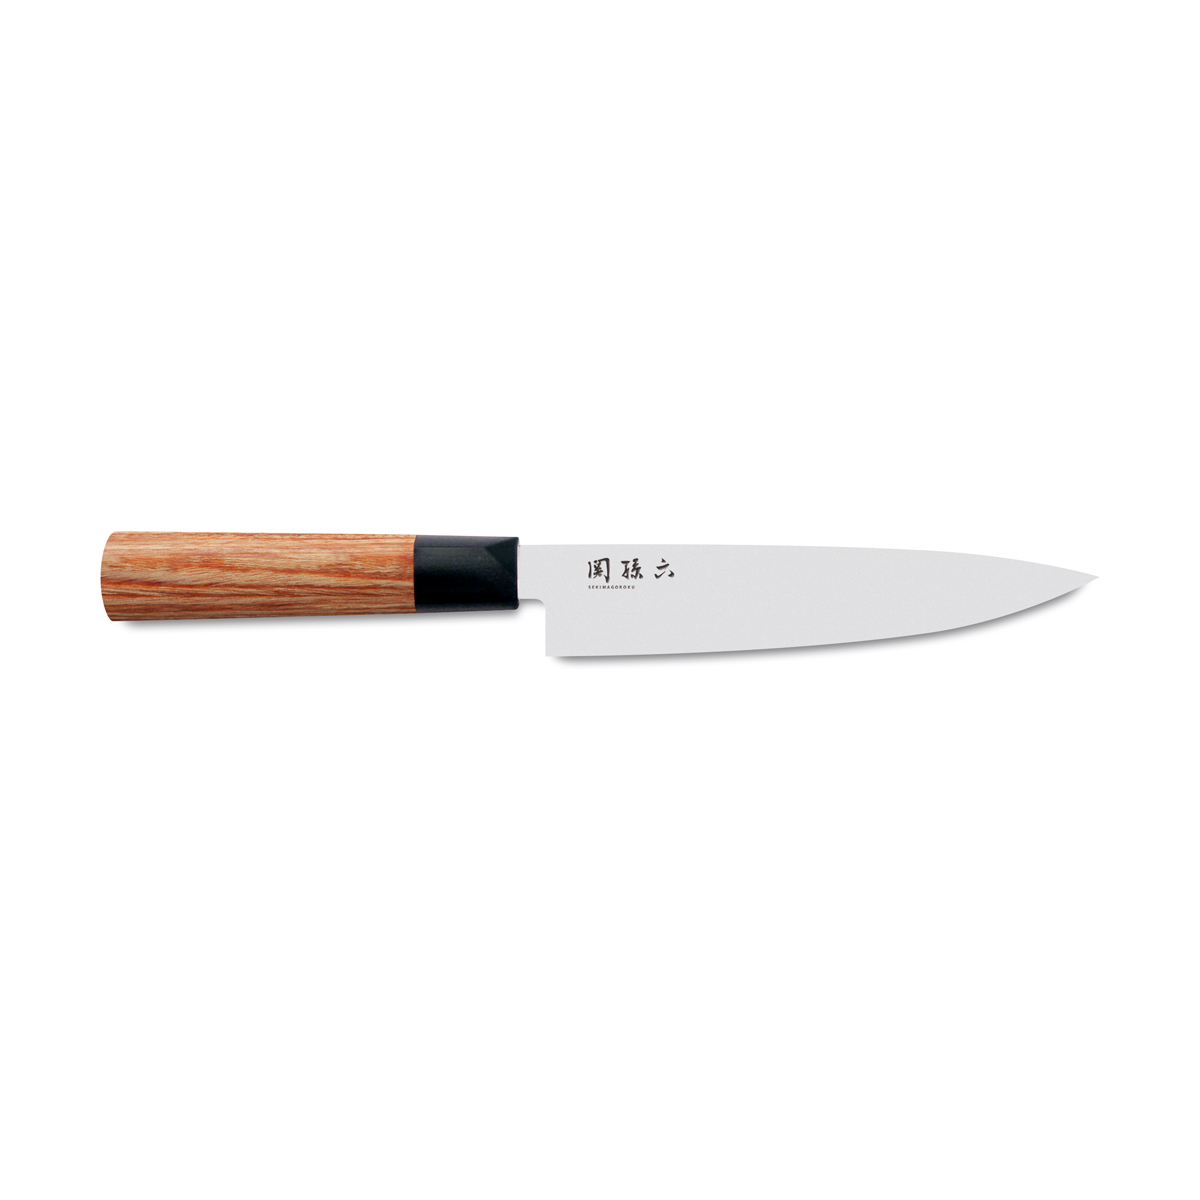 KAI Seki Magoroku Redwood Allzweckmesser 15 cm / Carbon 1K6 Edelstahl mit Pakkaholz-Griff